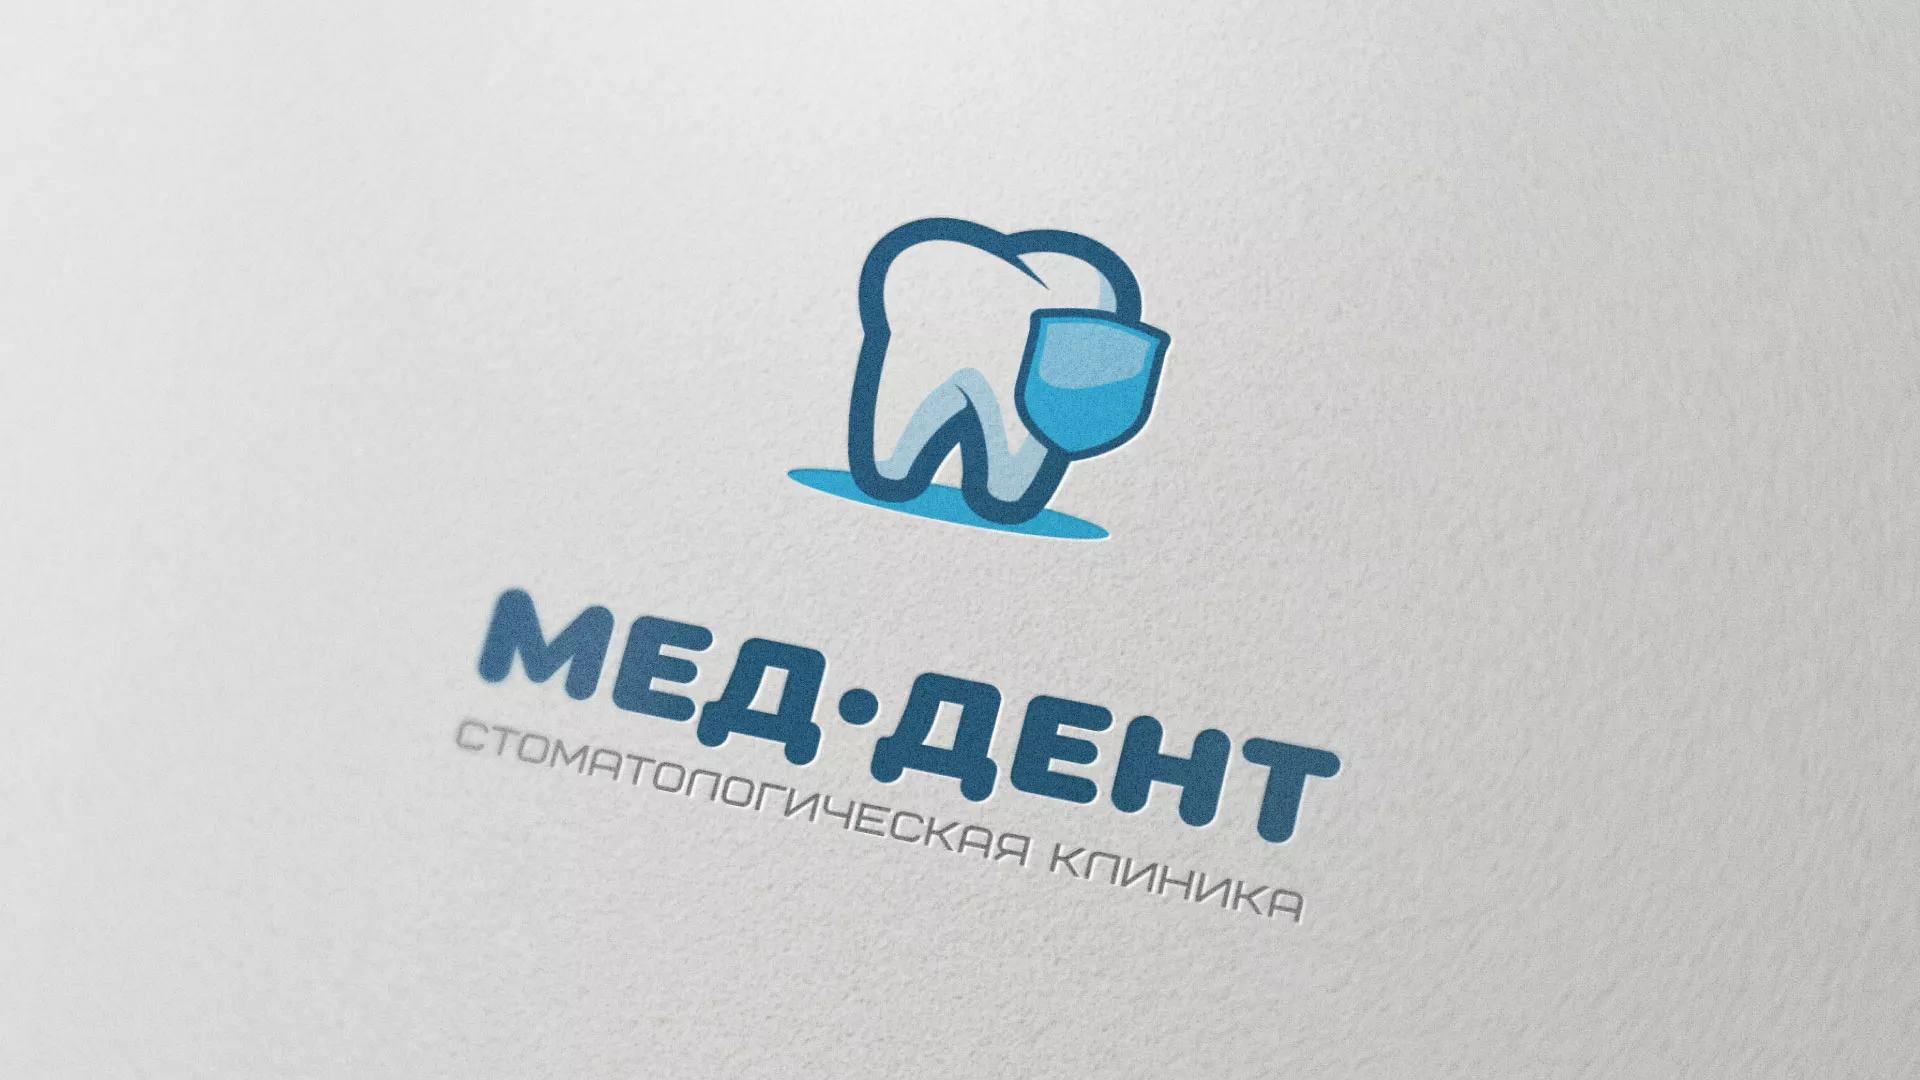 Разработка логотипа стоматологической клиники «МЕД-ДЕНТ» в Московском